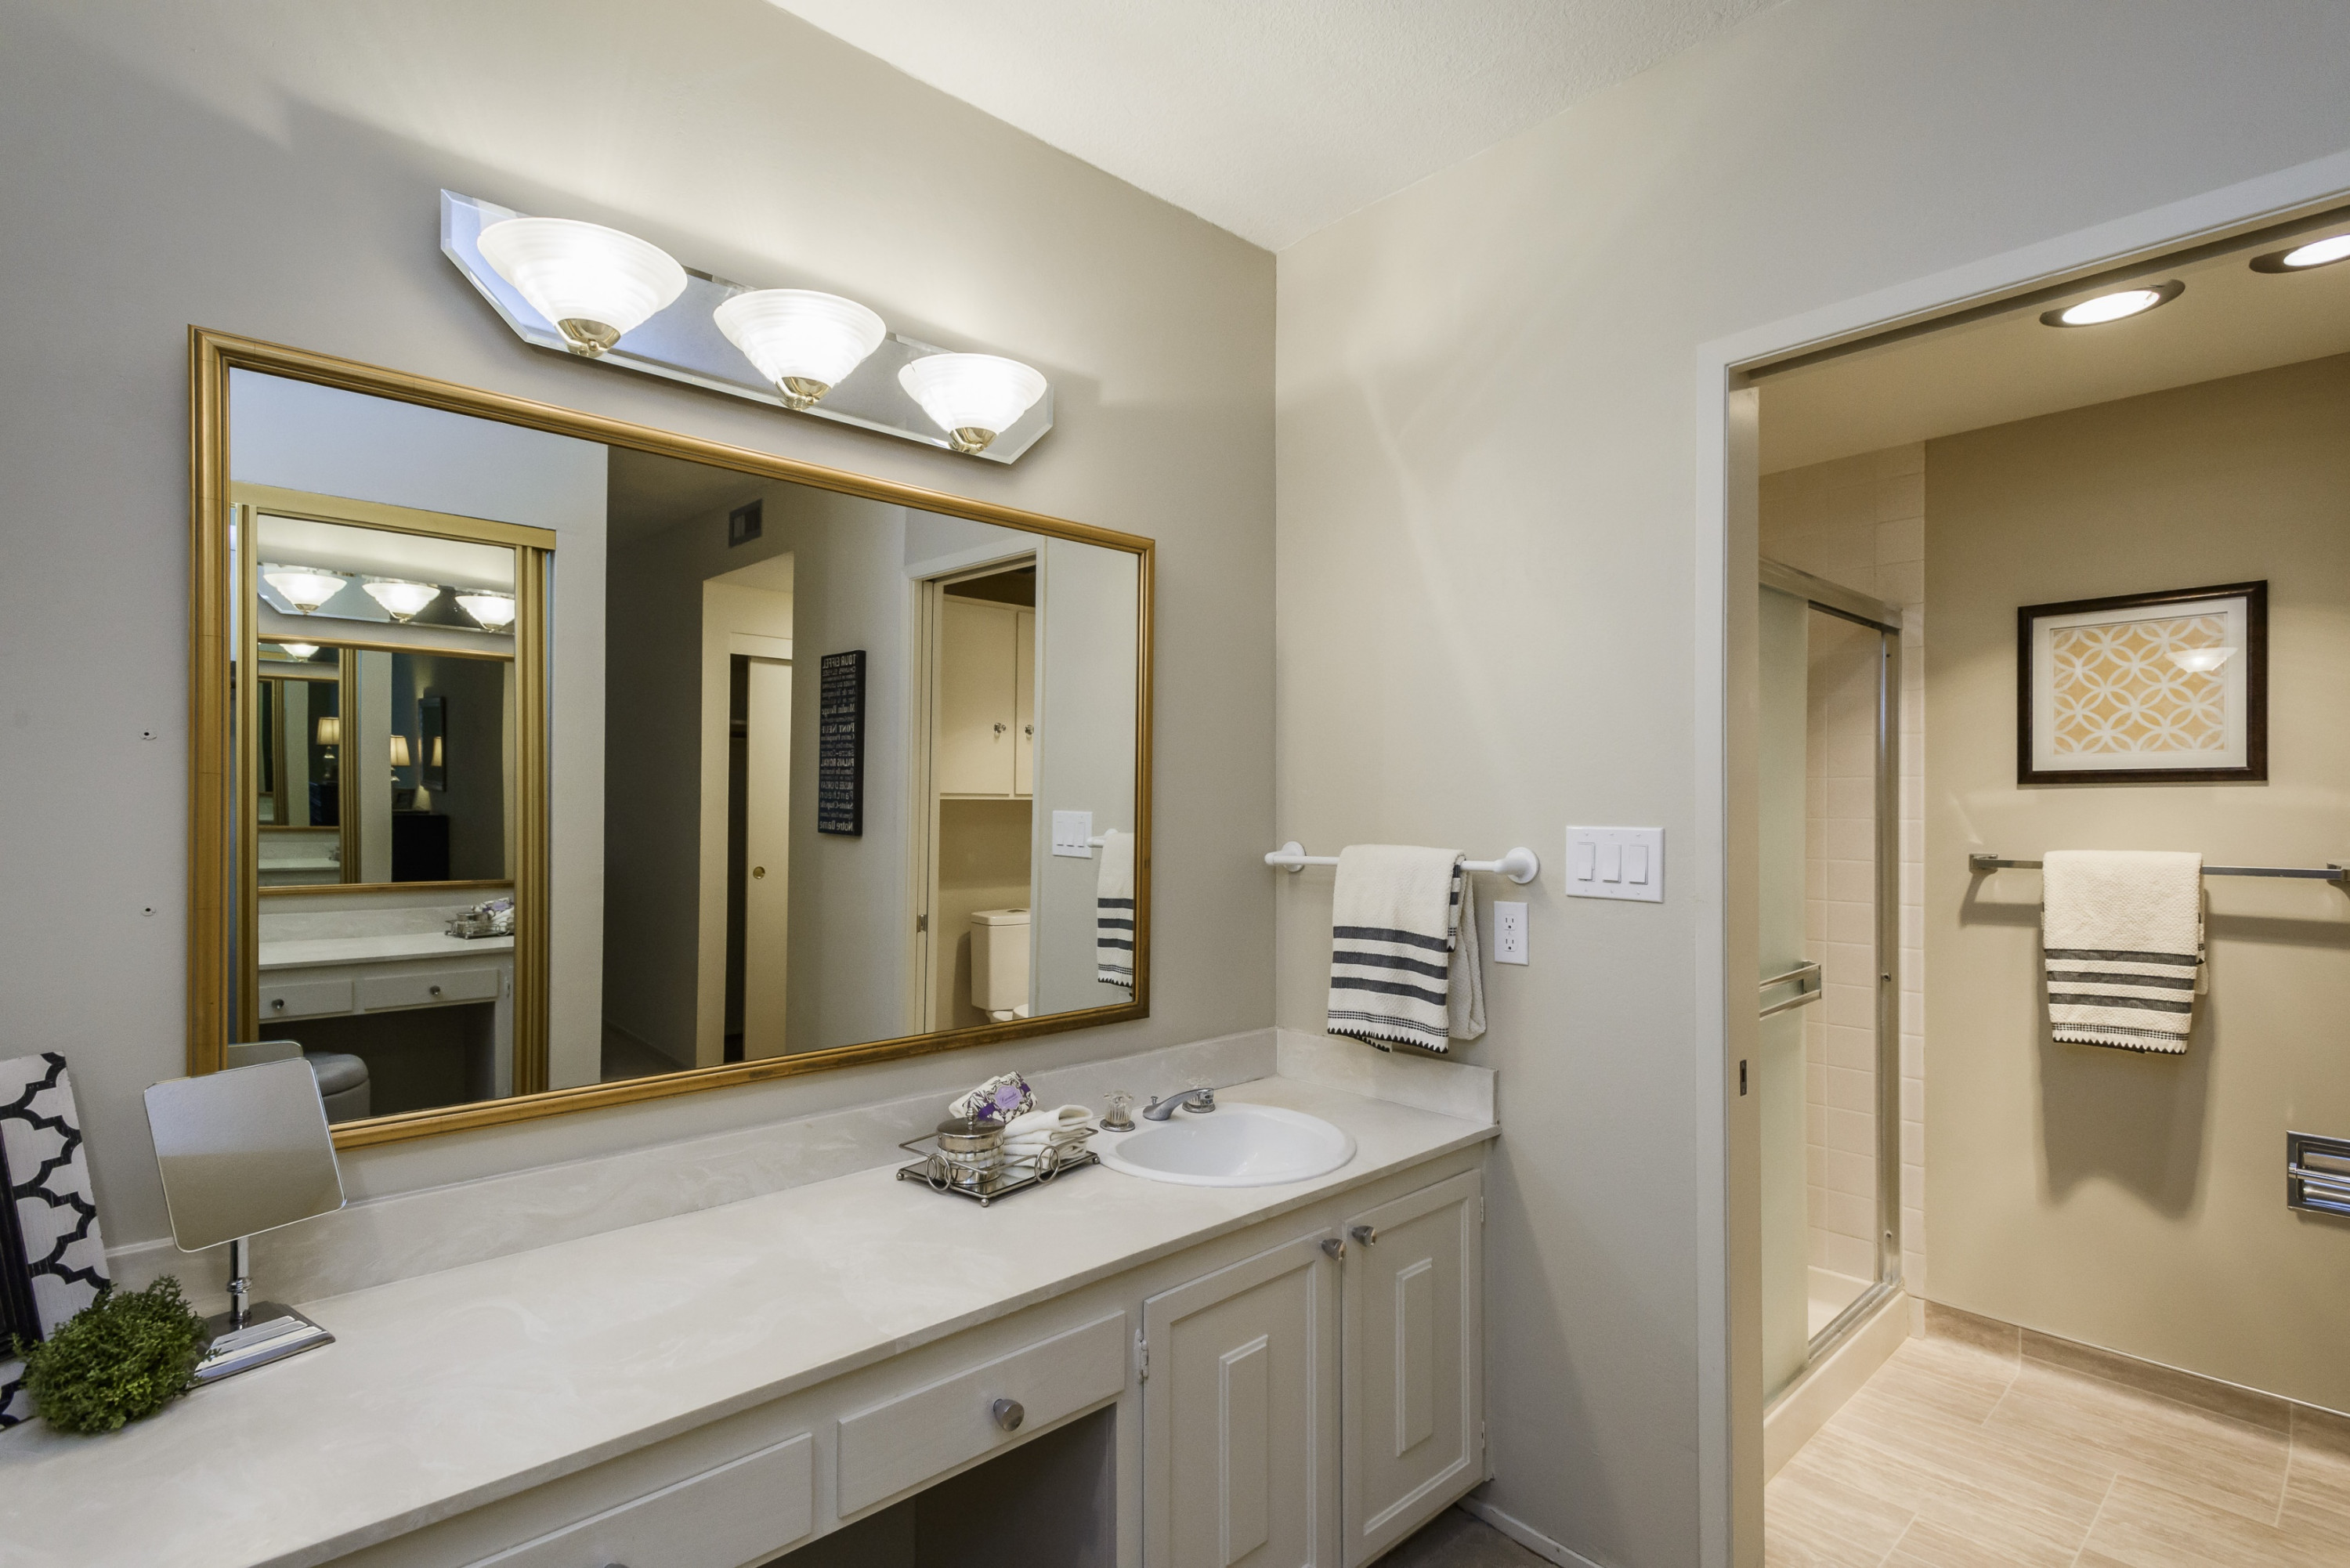 225 Virginia Avenue #3D Bathroom Mirror in Baywood Neighborhood in San Mateo.